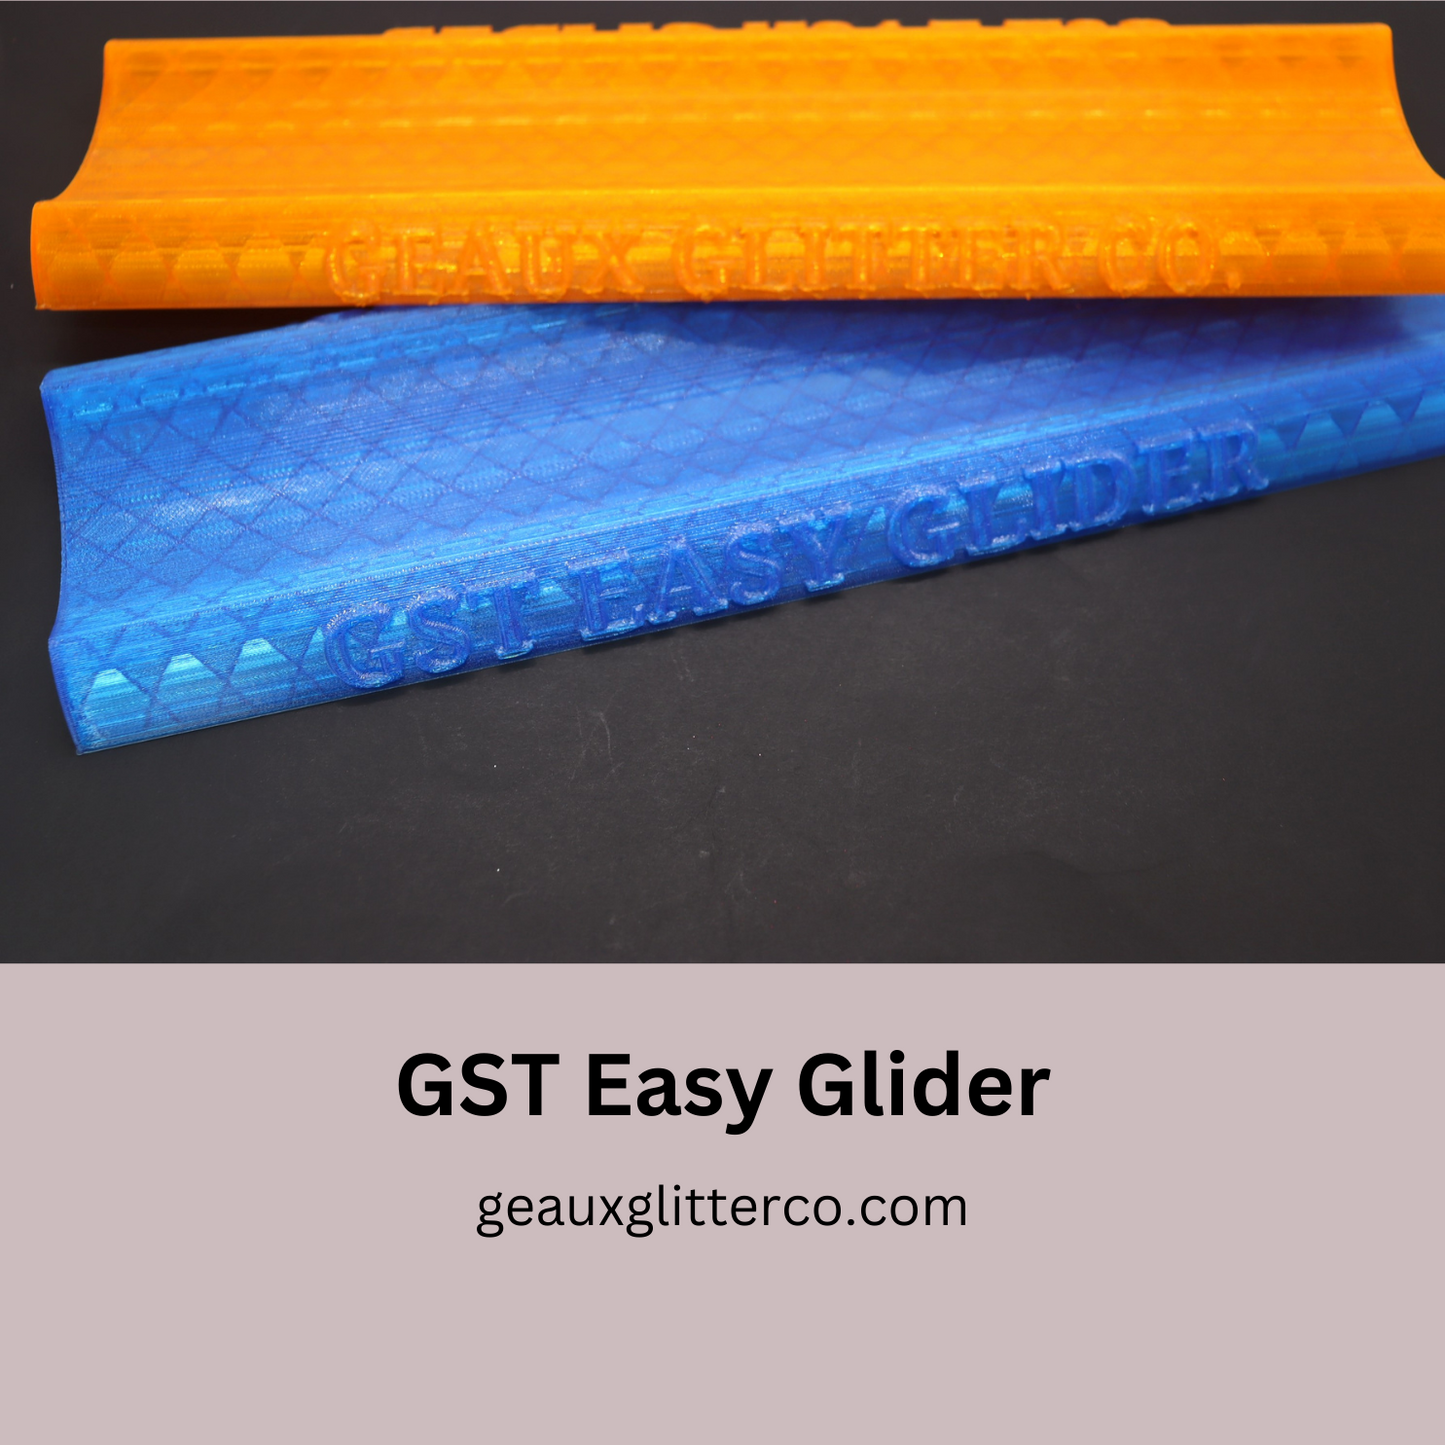 GST Easy Glider